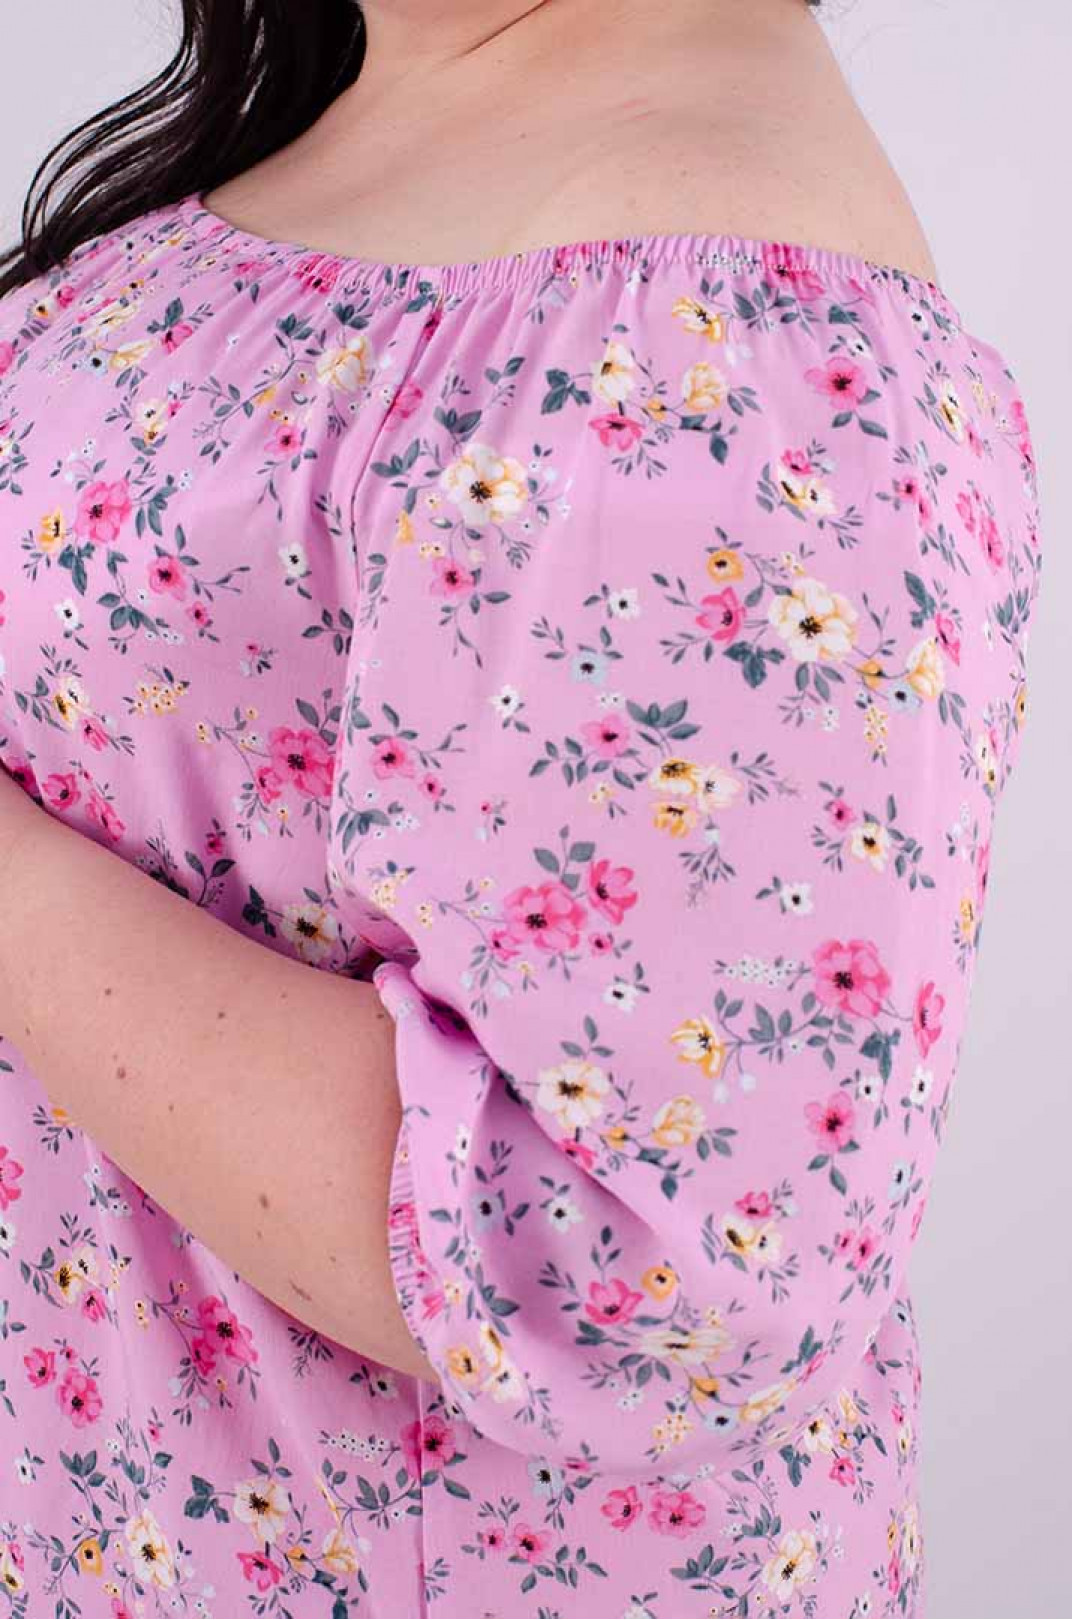 Шпапельная цветочная блуза супер батал